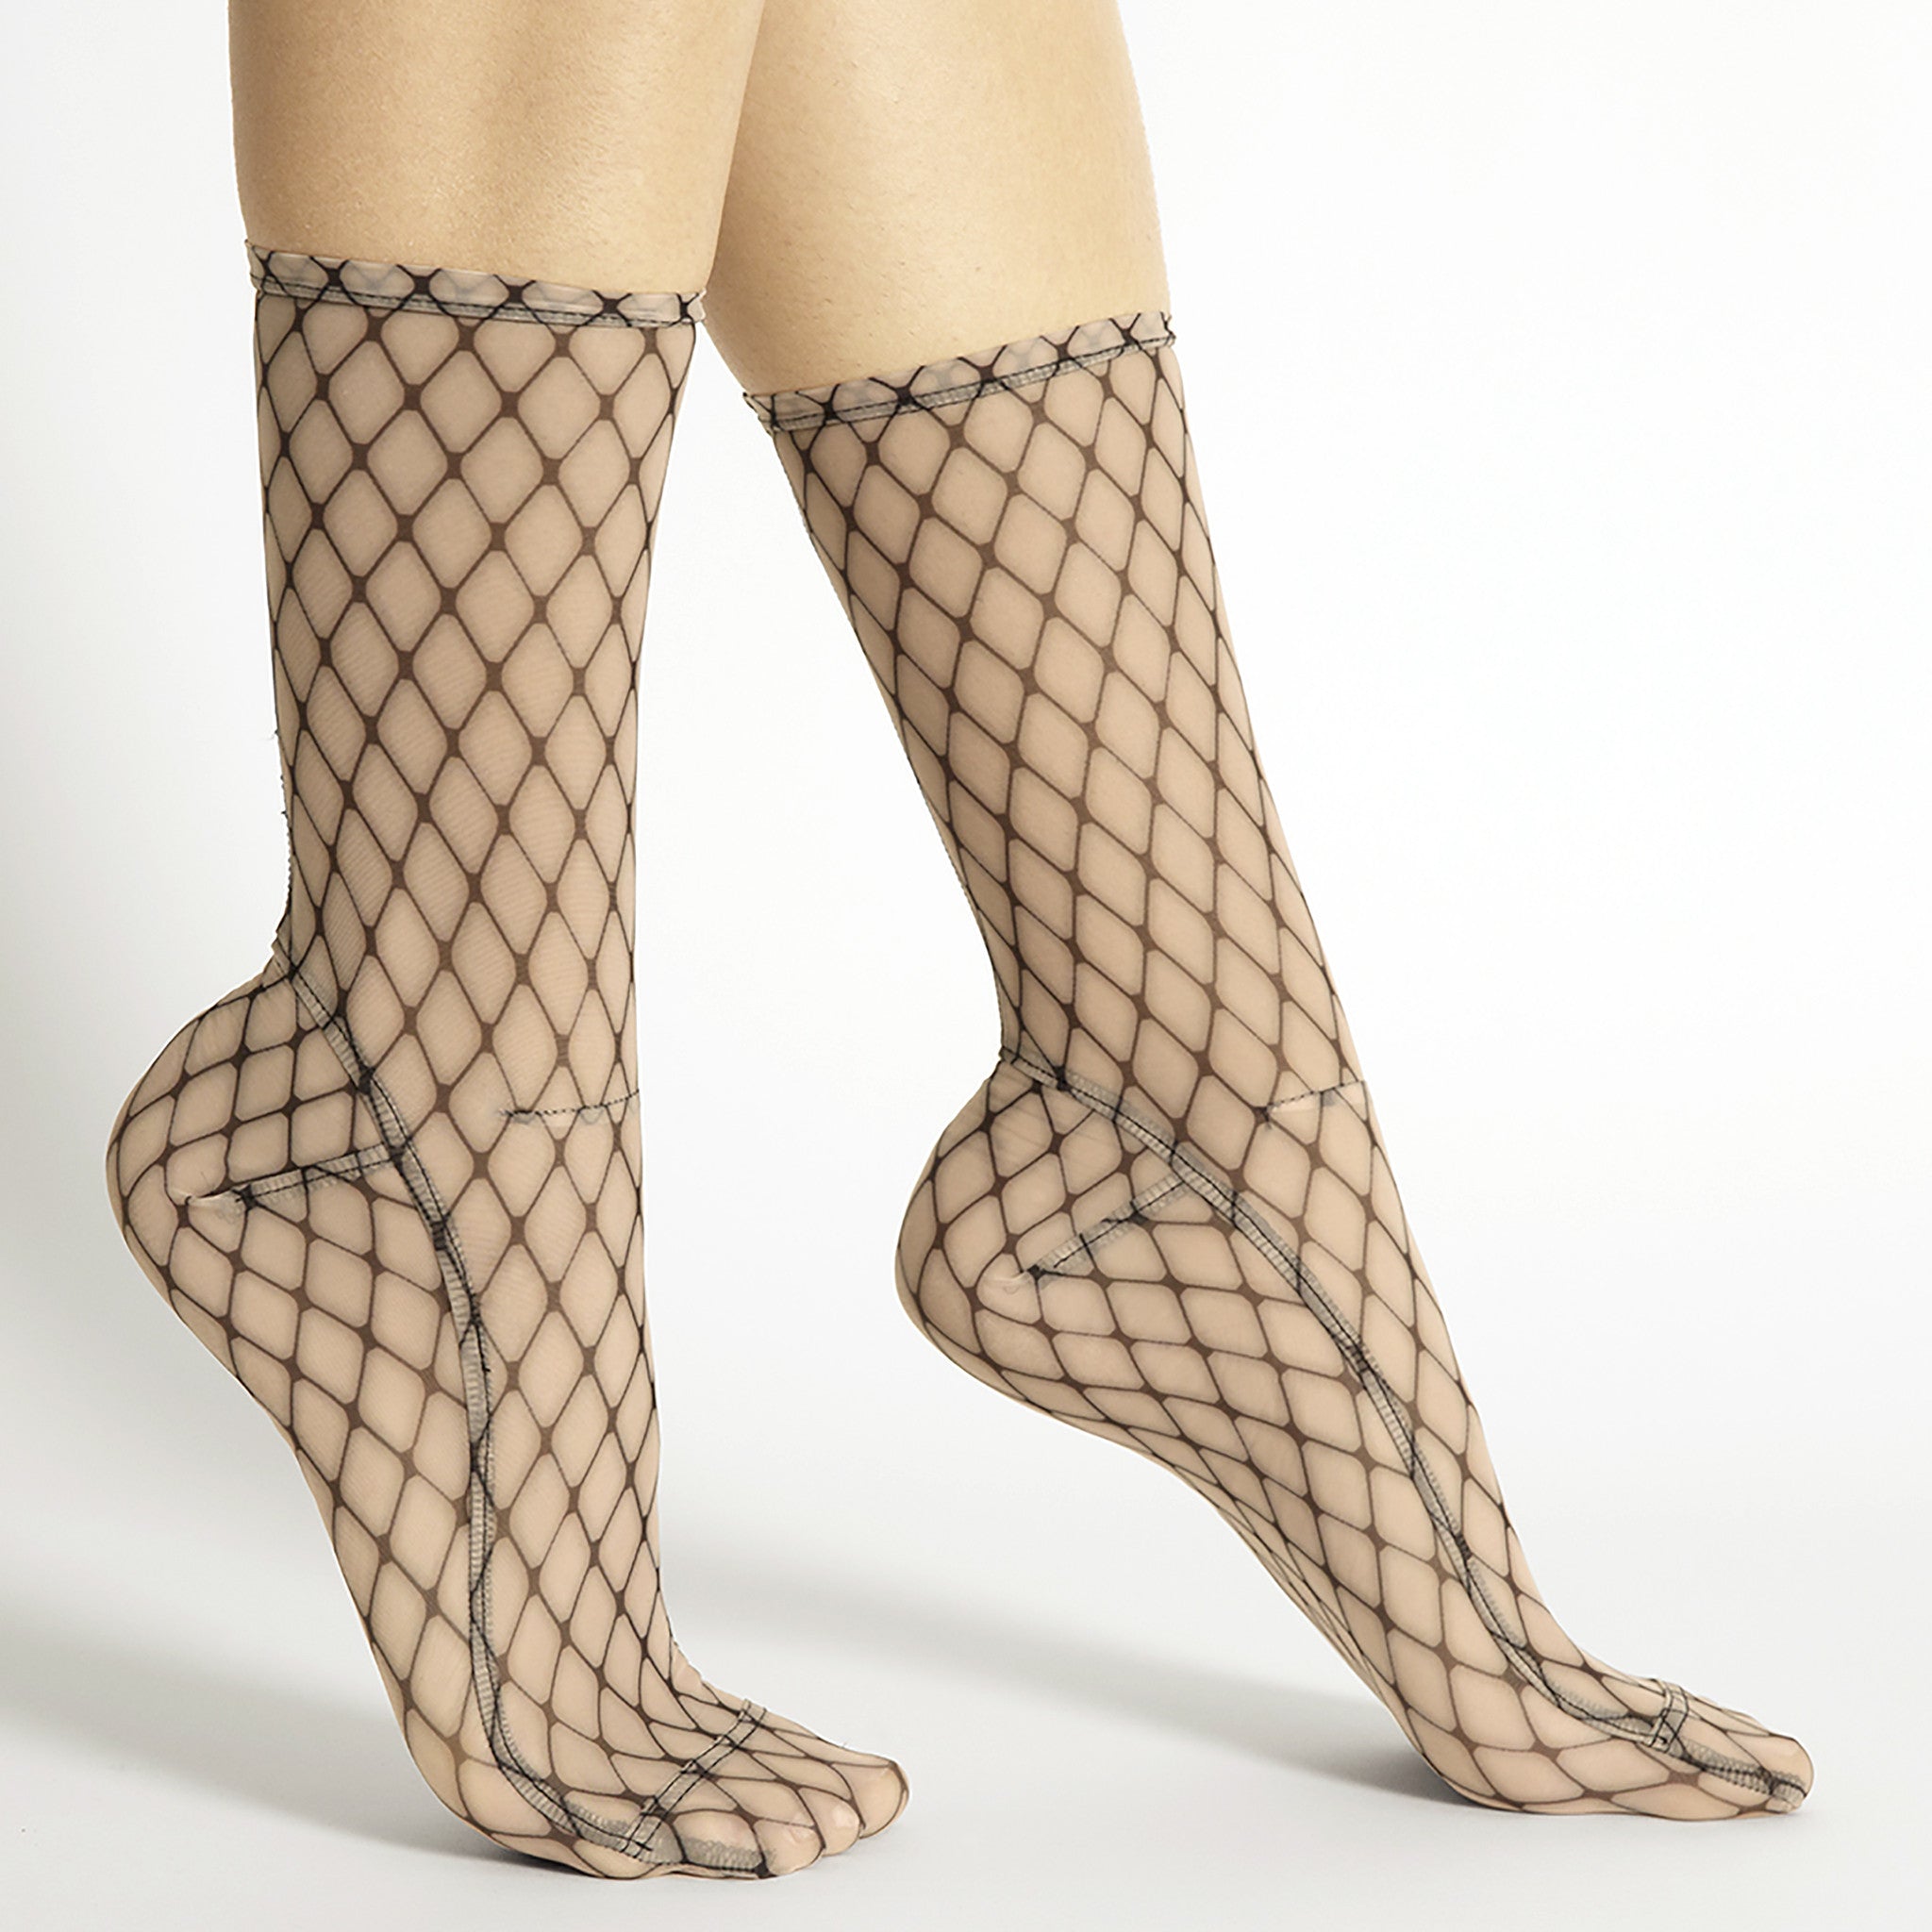 SAMPLE Big Fishnet Mesh Socks – Darner Socks